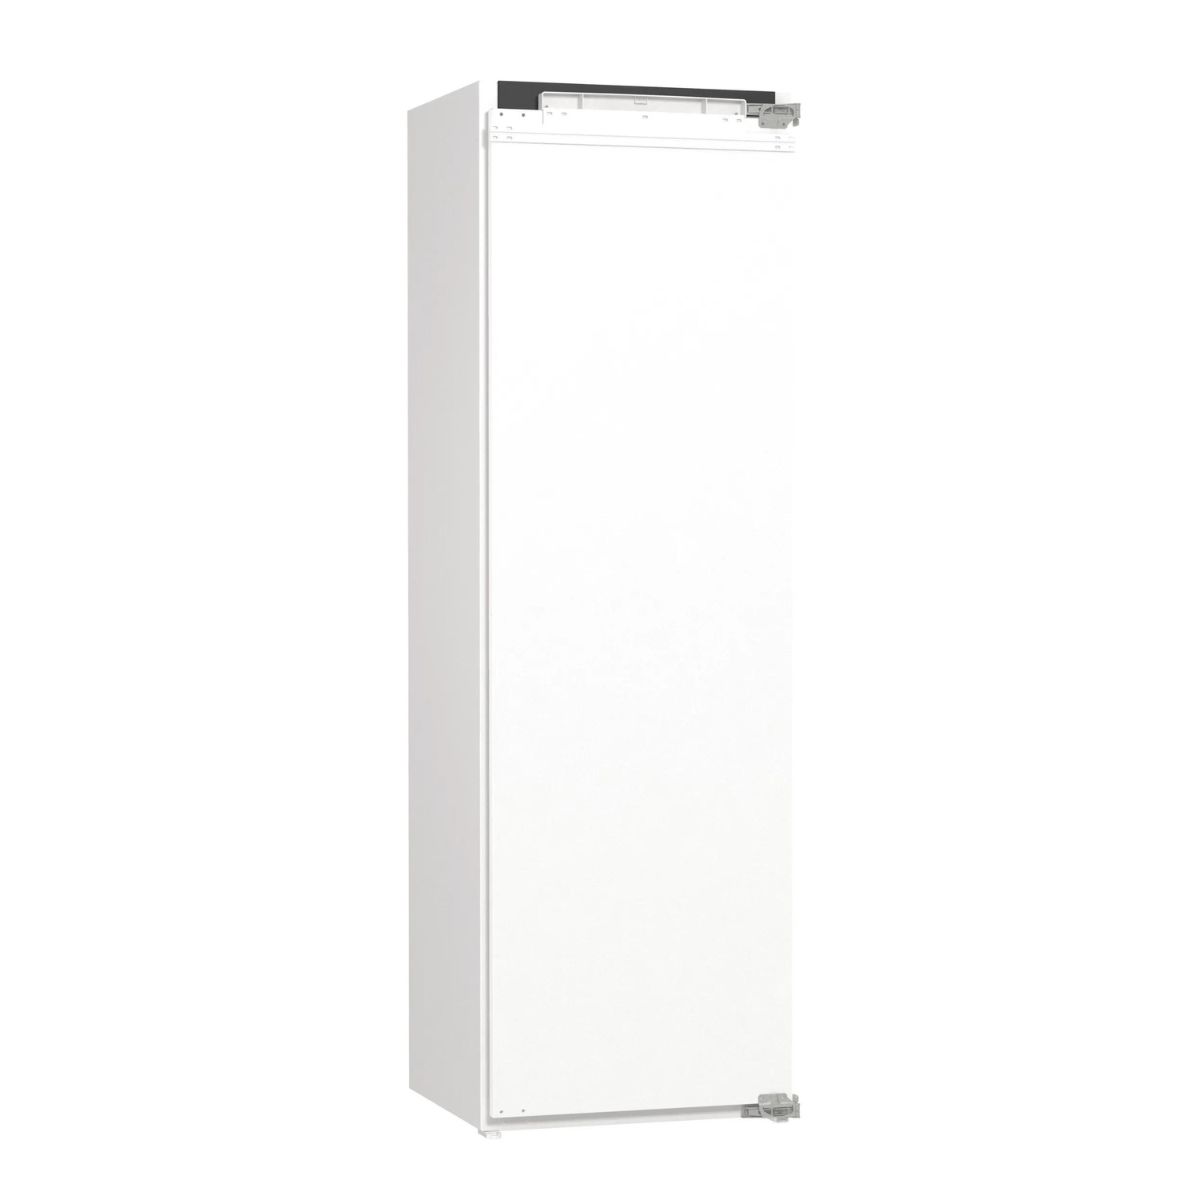 Refrigerador de Embutir/Revestir 305L 56cm 220V | Gorenje - Foto 2